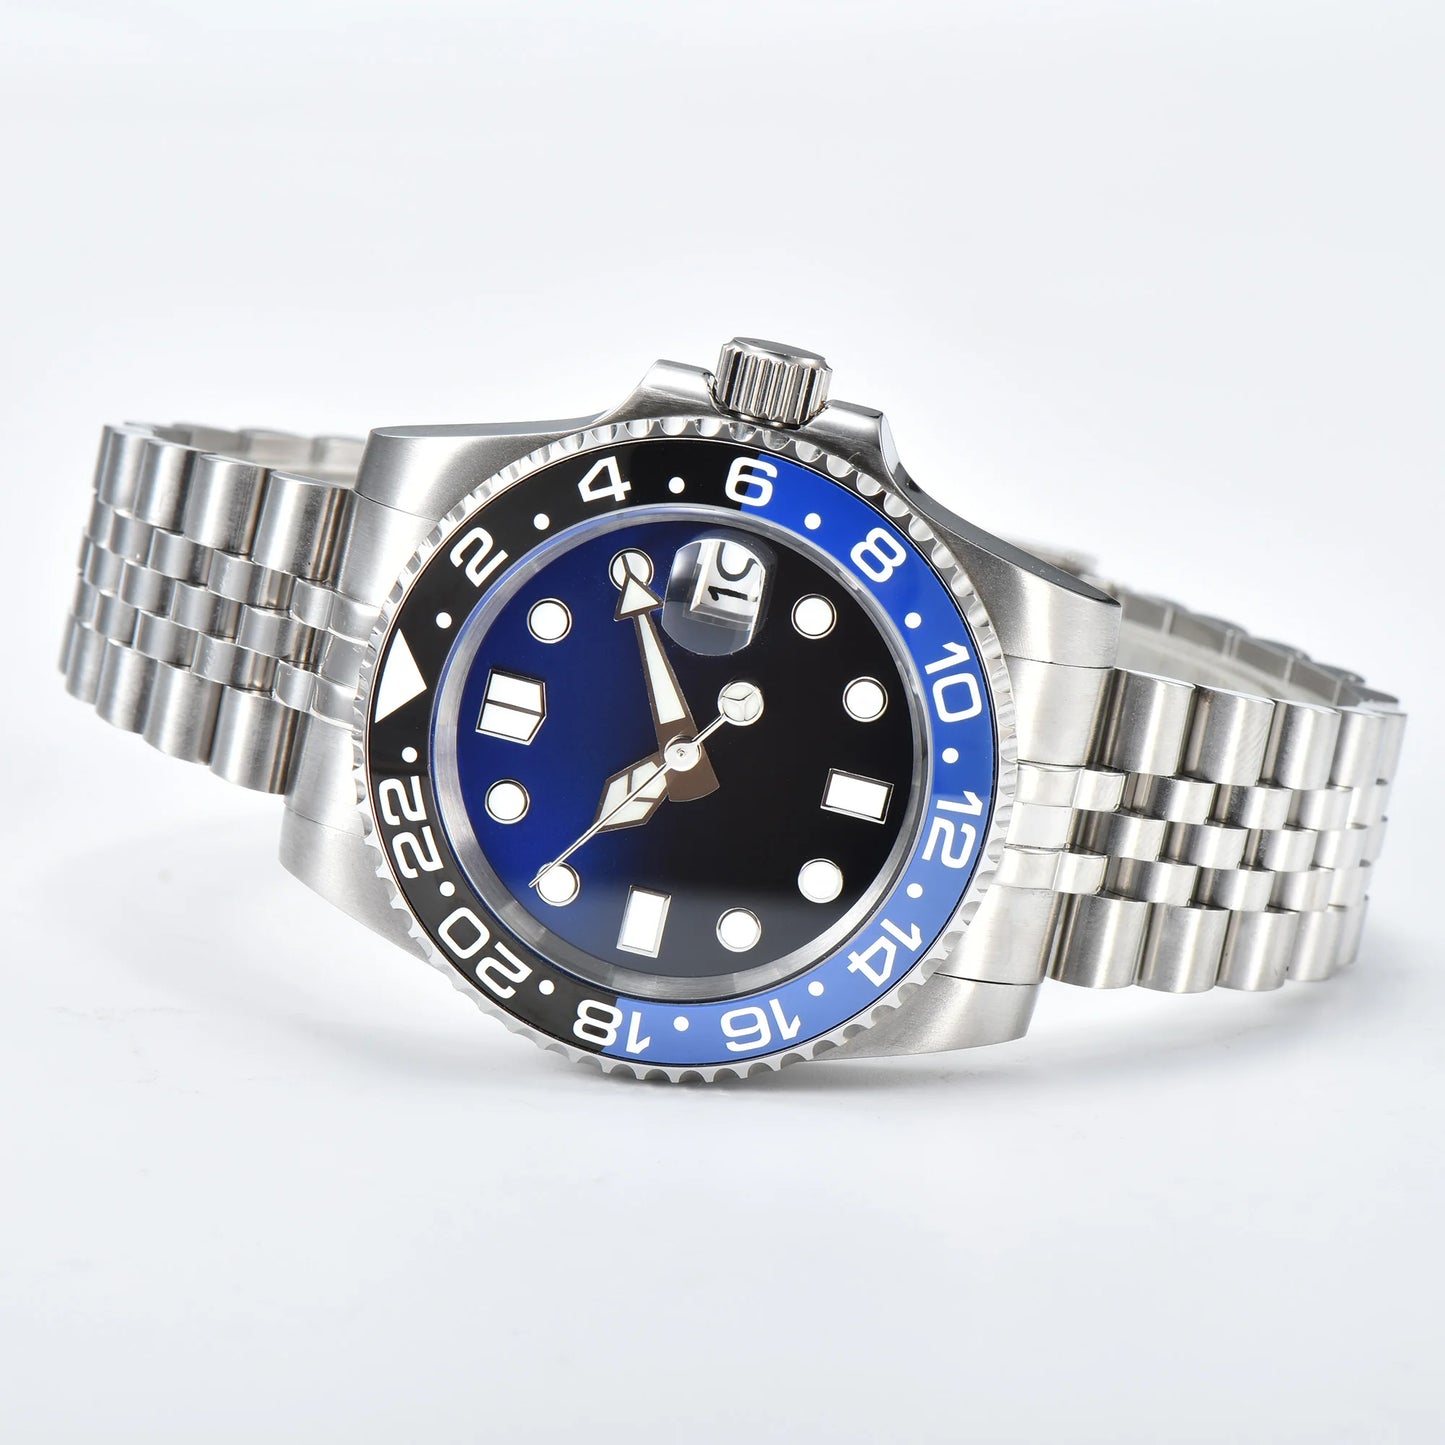 40MM Skx007 Men's Watch Waterproof NH35 Automatic Watch Ceramic Bezel Automatic Mmen's Watch Silver Jubilee Strap Clock